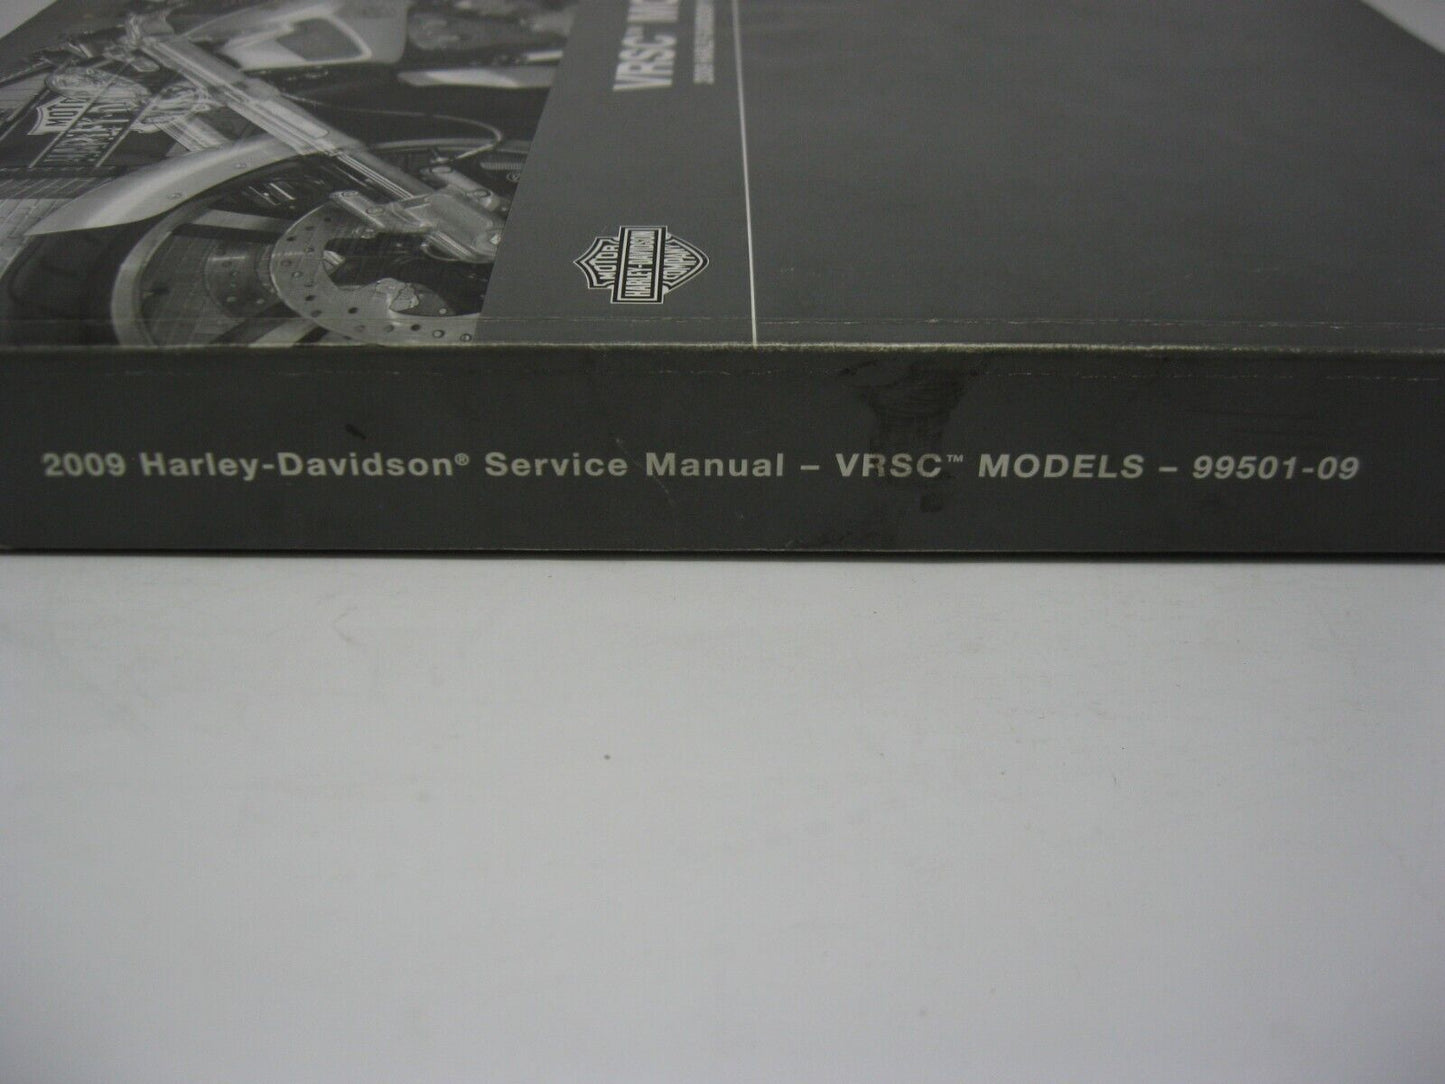 Harley-Davidson VRSC Models 2009 Service Manual 99501-09